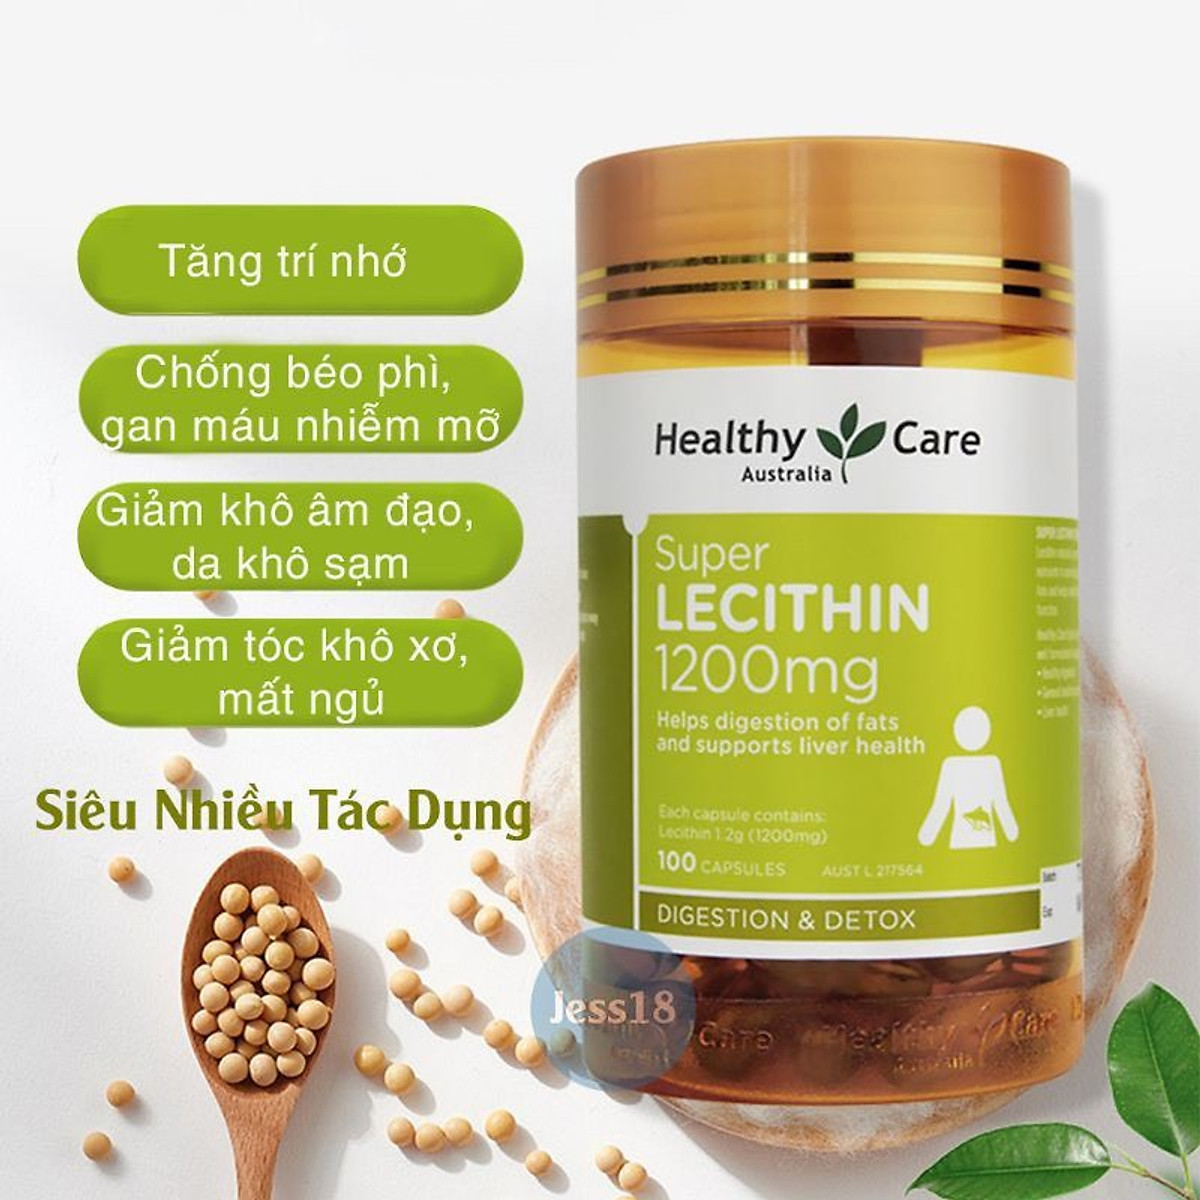 Super Lecithin 1200mg với nguồn nguyên liệu 100% từ mầm đậu nành nguyên chất